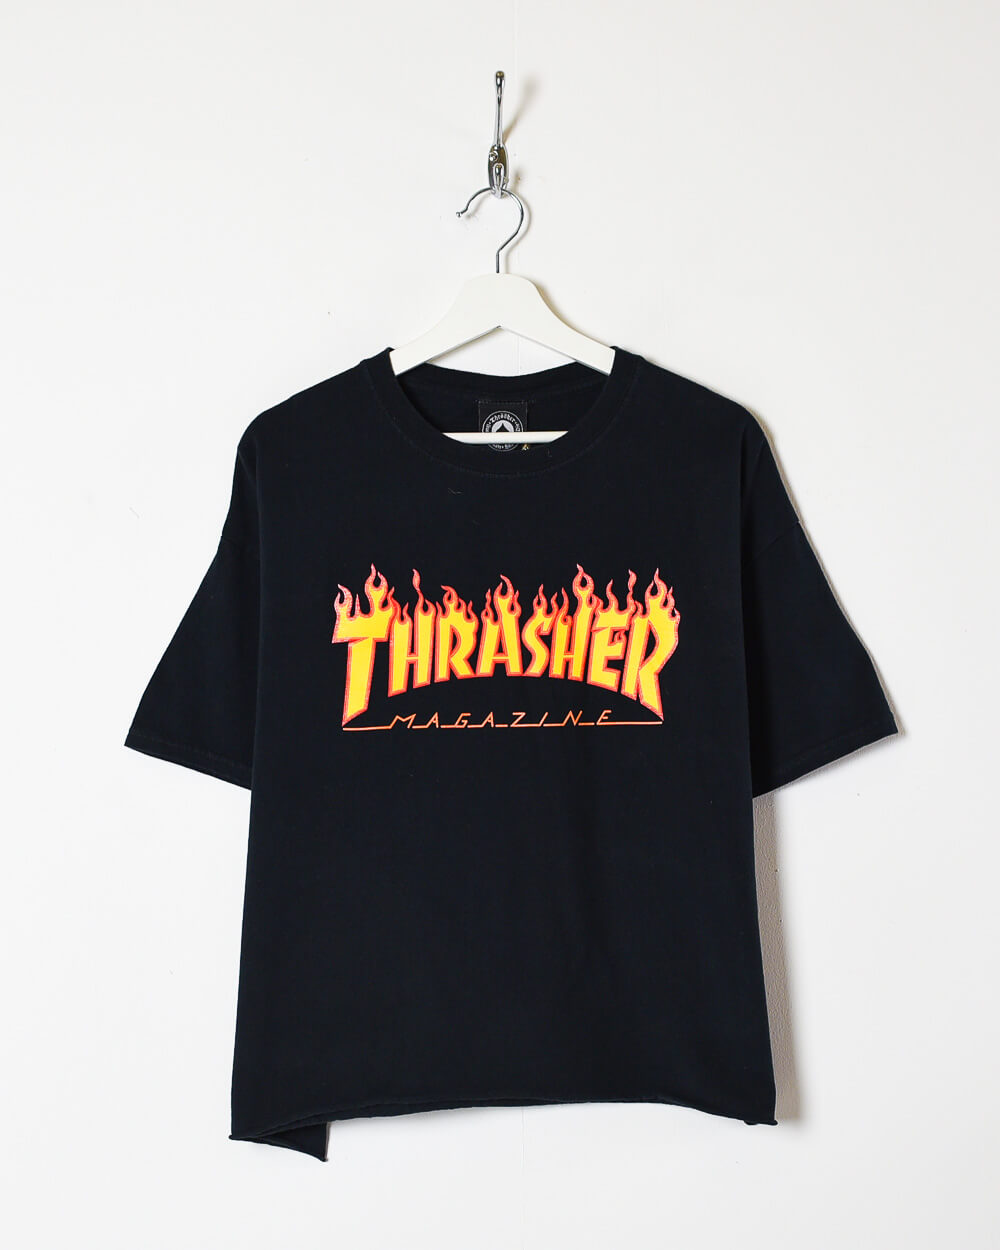 Black Thrasher Magazine Women's Cropped T-Shirt - X-Large